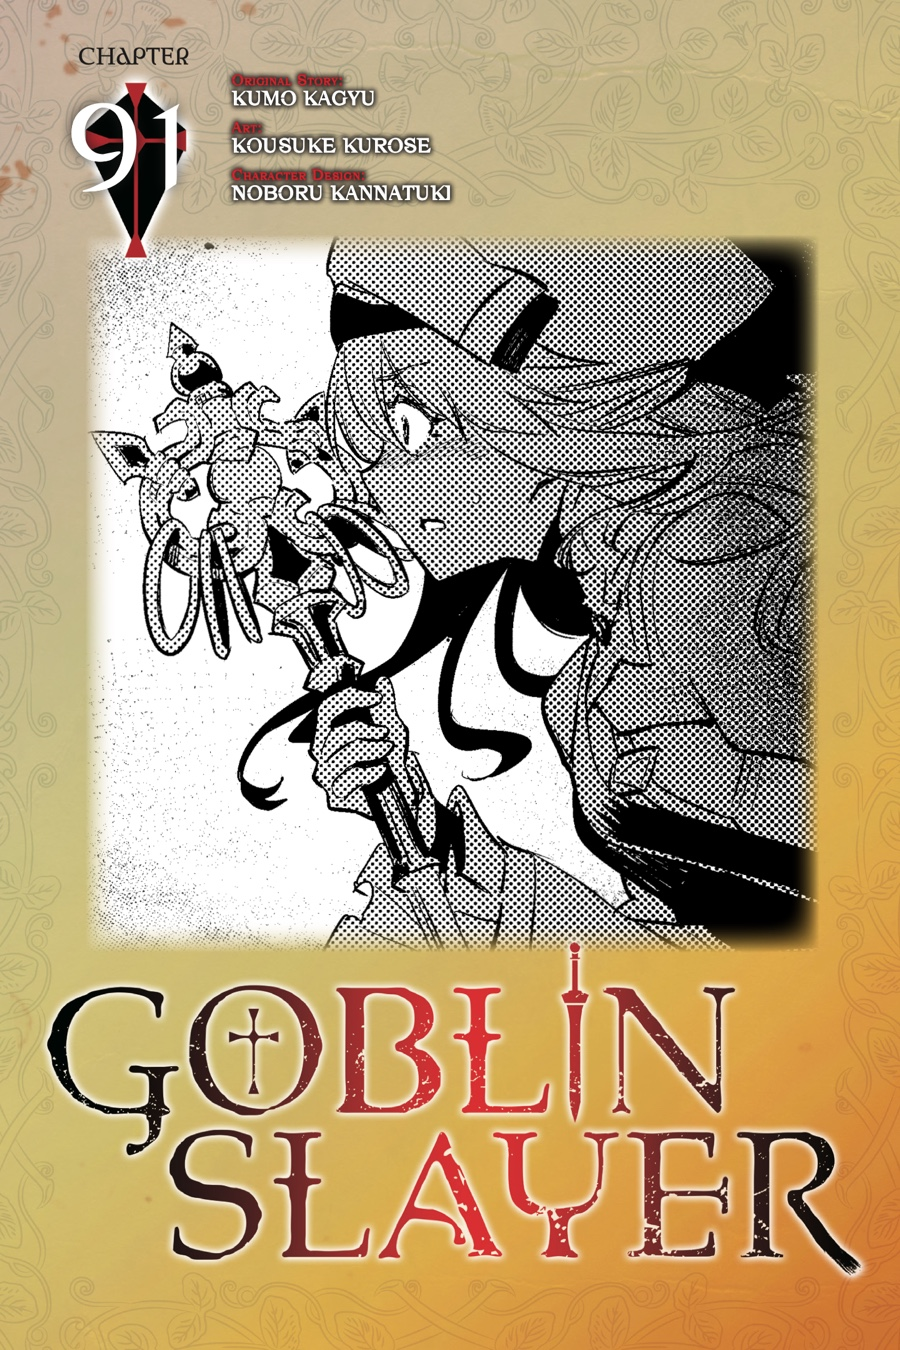 Goblin Slayer Chapter 91 image 01